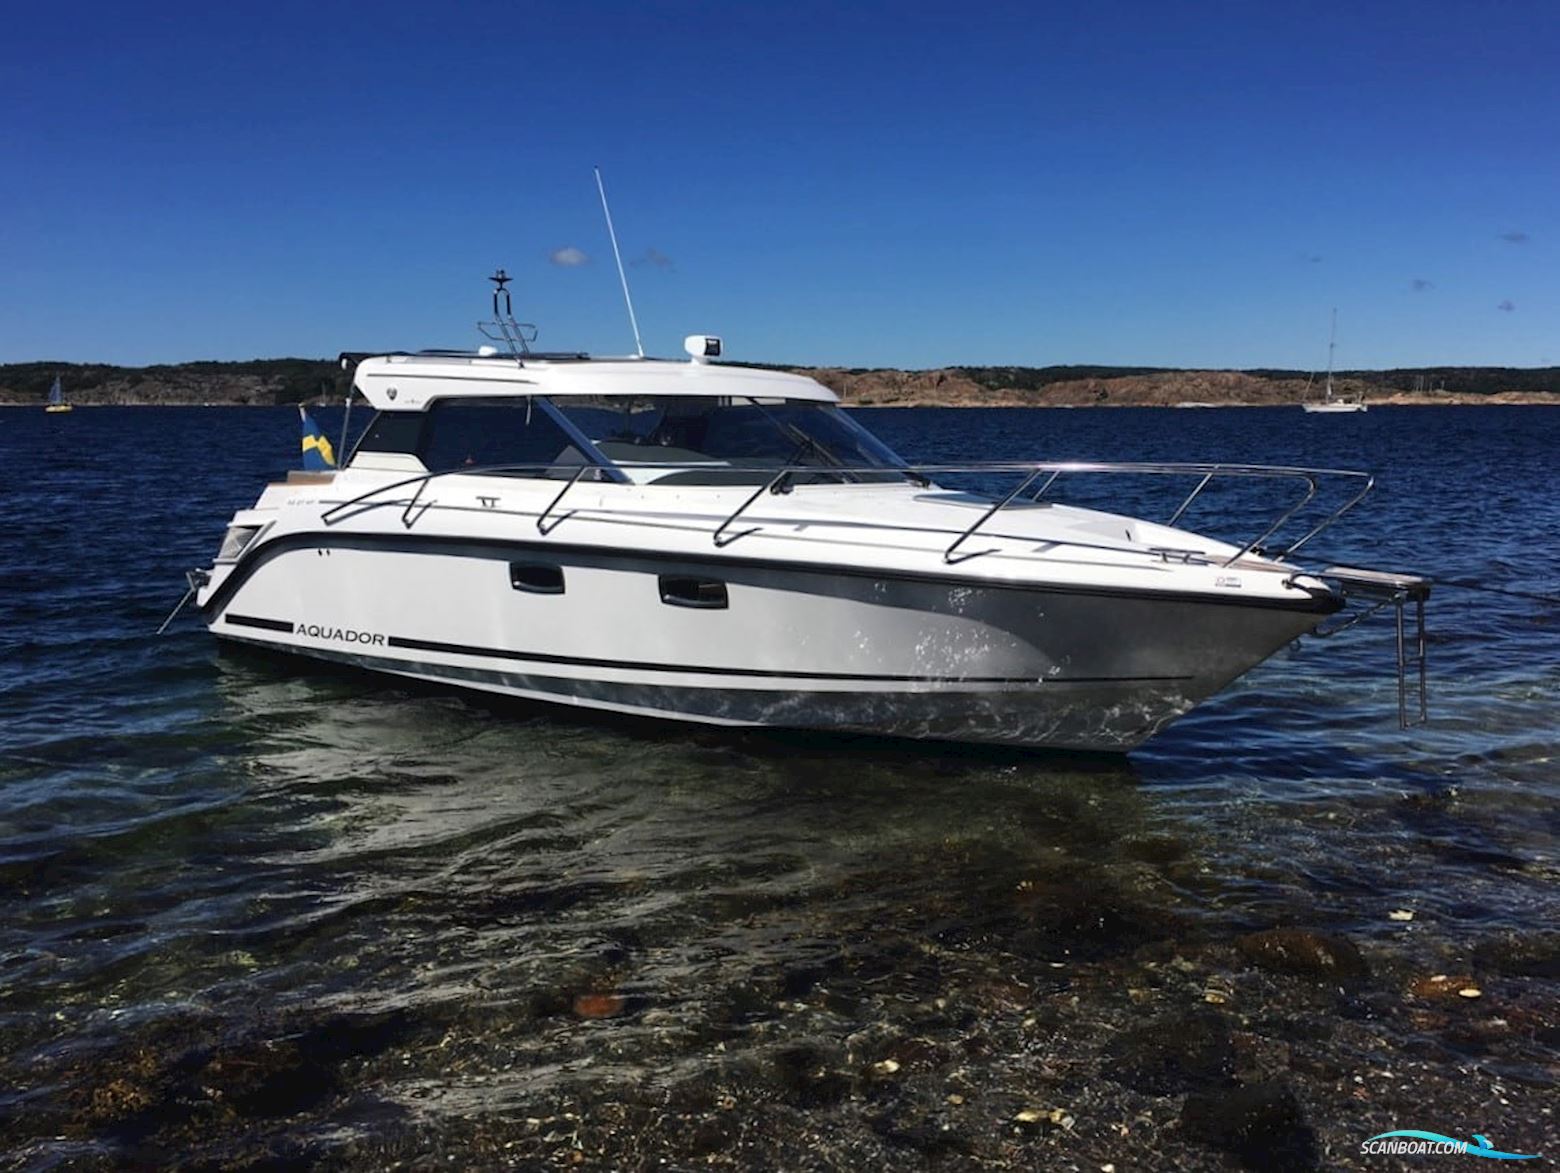 Aquador 27 HT Motor boat 2018, with Mercury Diesel V6-260 hk engine, Sweden